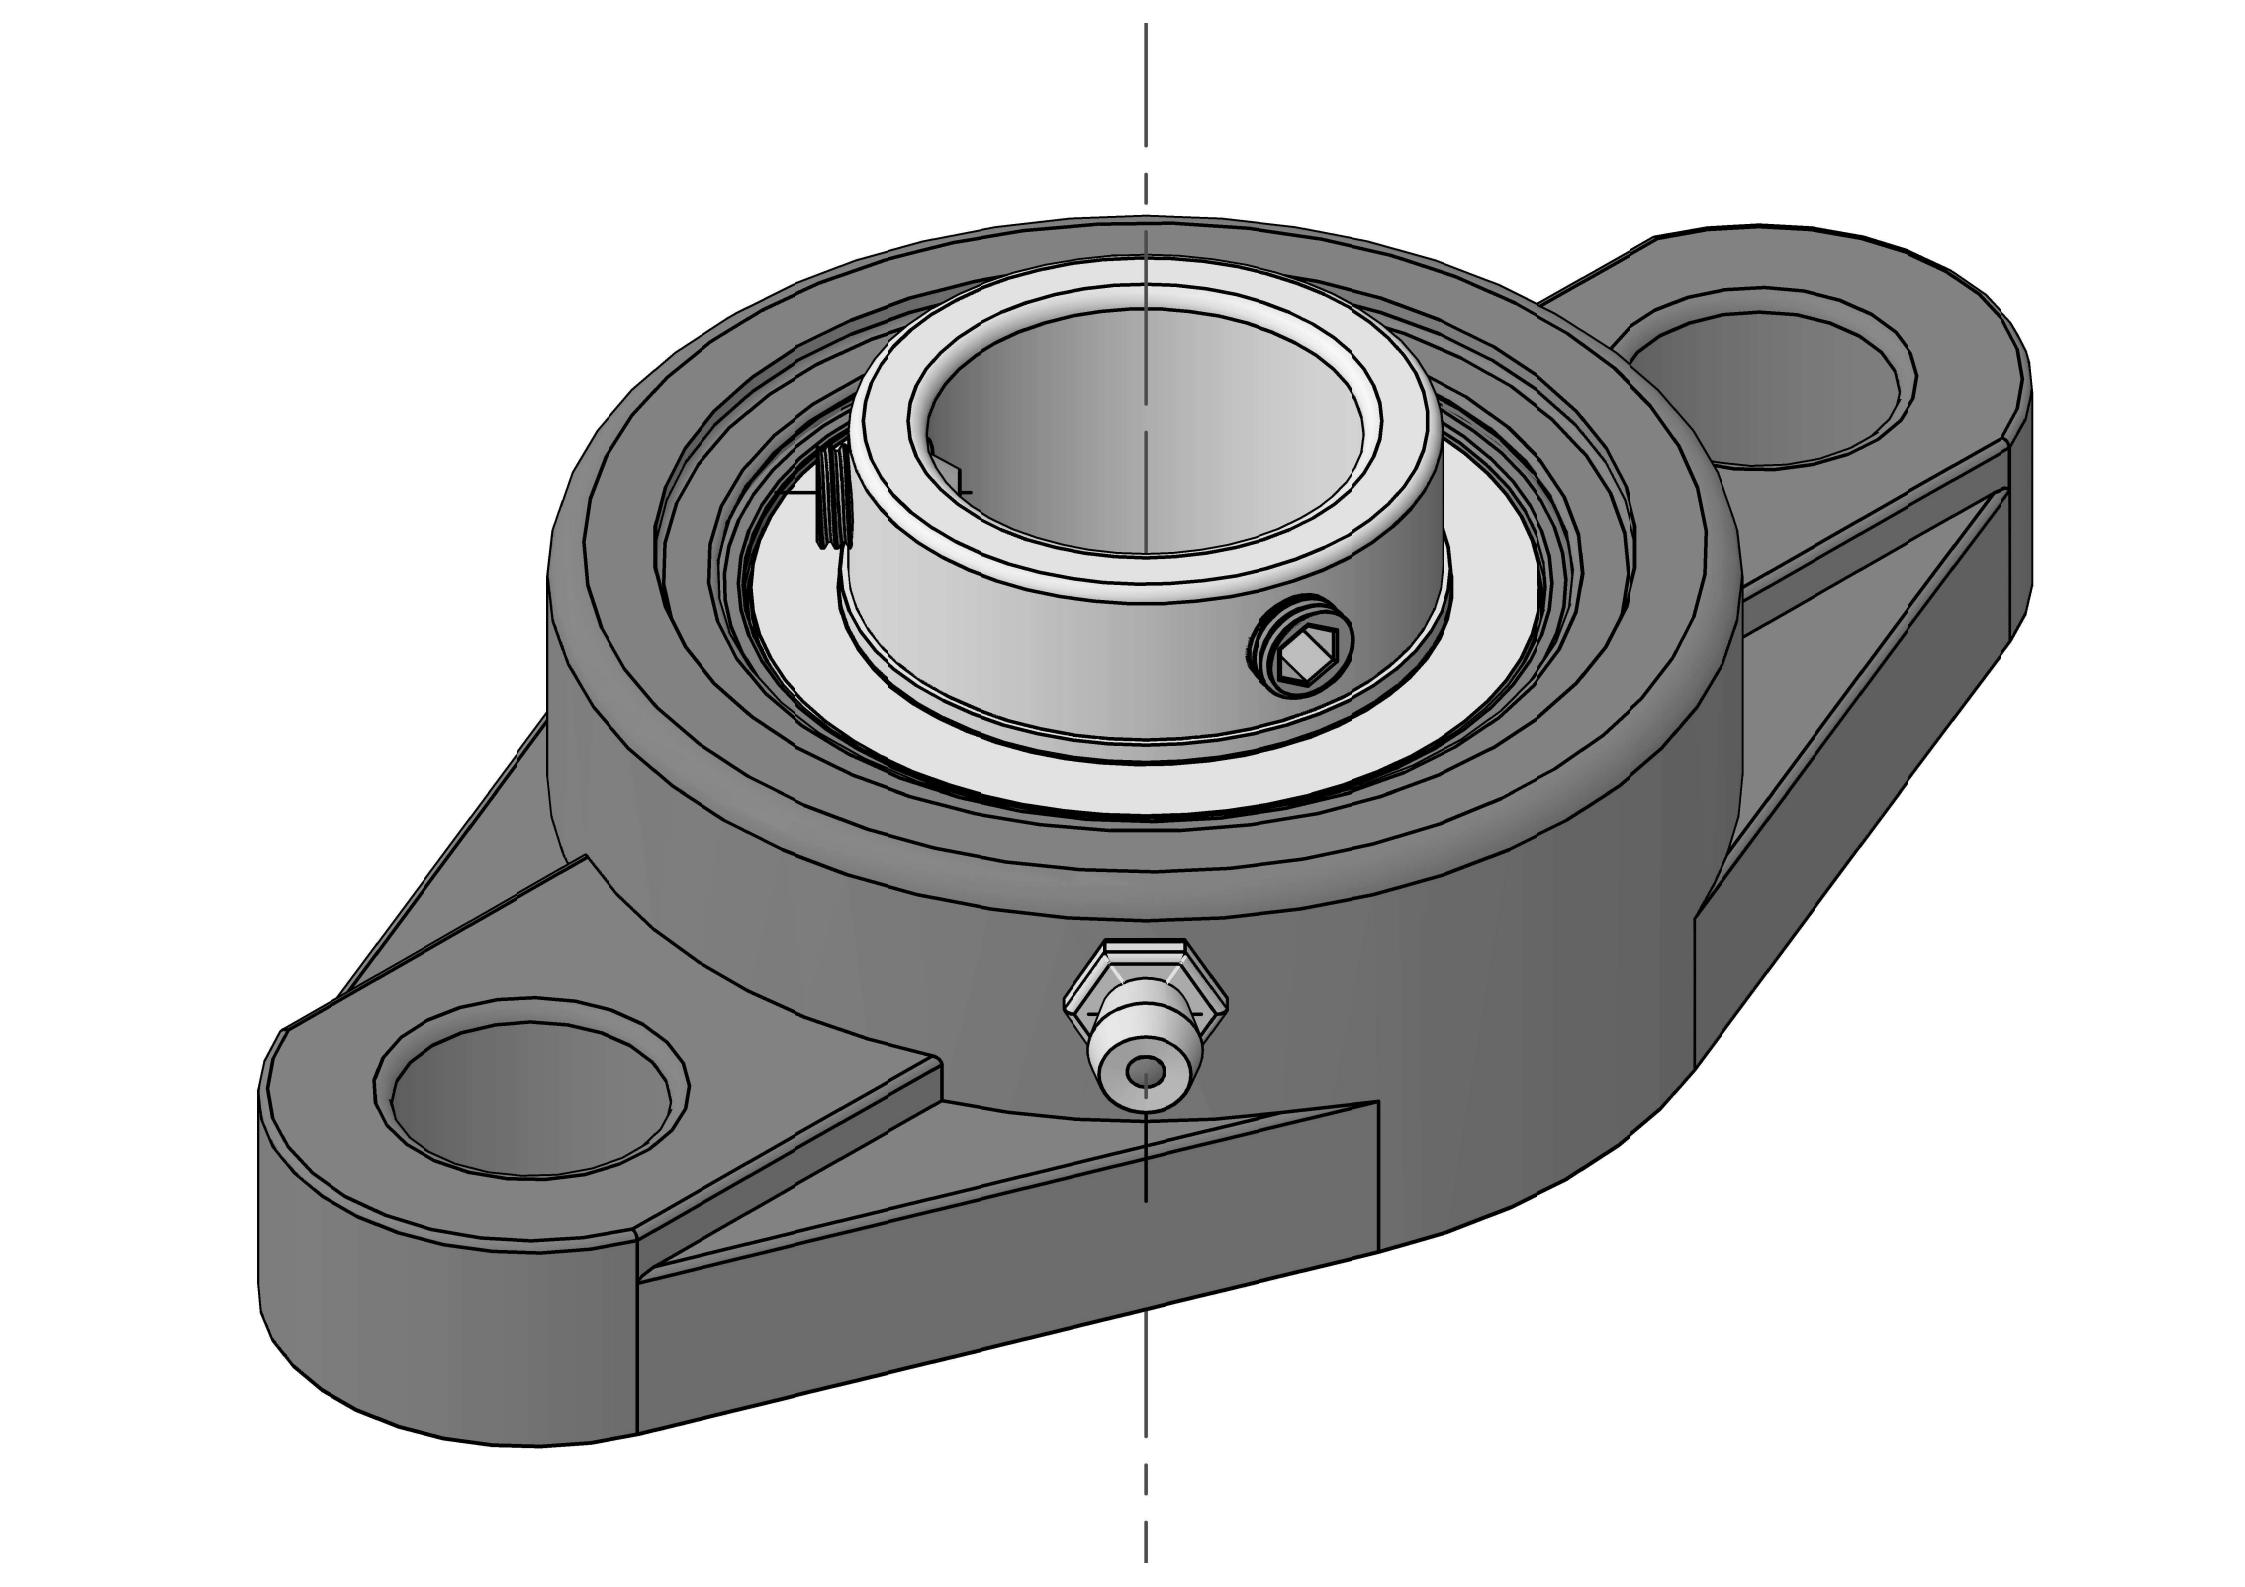 UCFL213-40 2-1/2 インチボアの 2 ボルト楕円形フランジ ベアリング ユニット